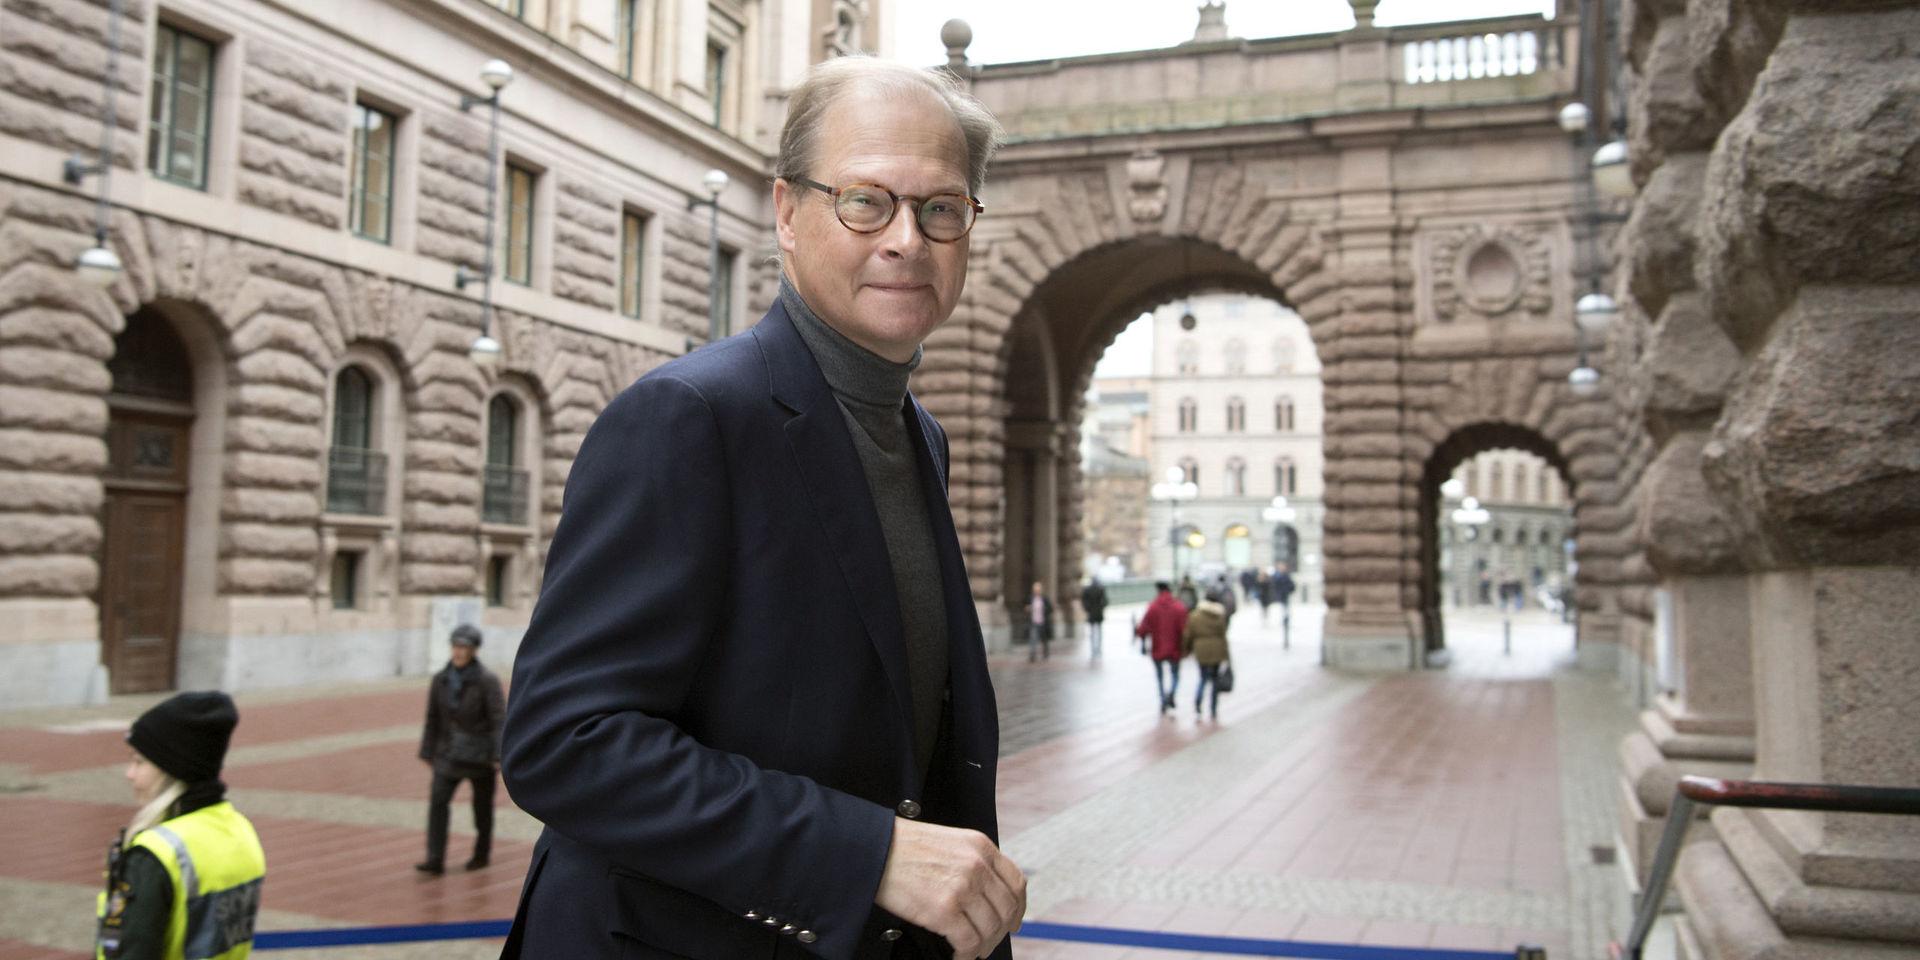 Den inrikespolitiske kommentatorn Mats Knutson arbetar mycket och har nästan alltid jour, men efter en förmodad hjärtinfarkt för två år sedan försöker han att ta det lugnare. Nu fyller SVT-profilen 55 år.